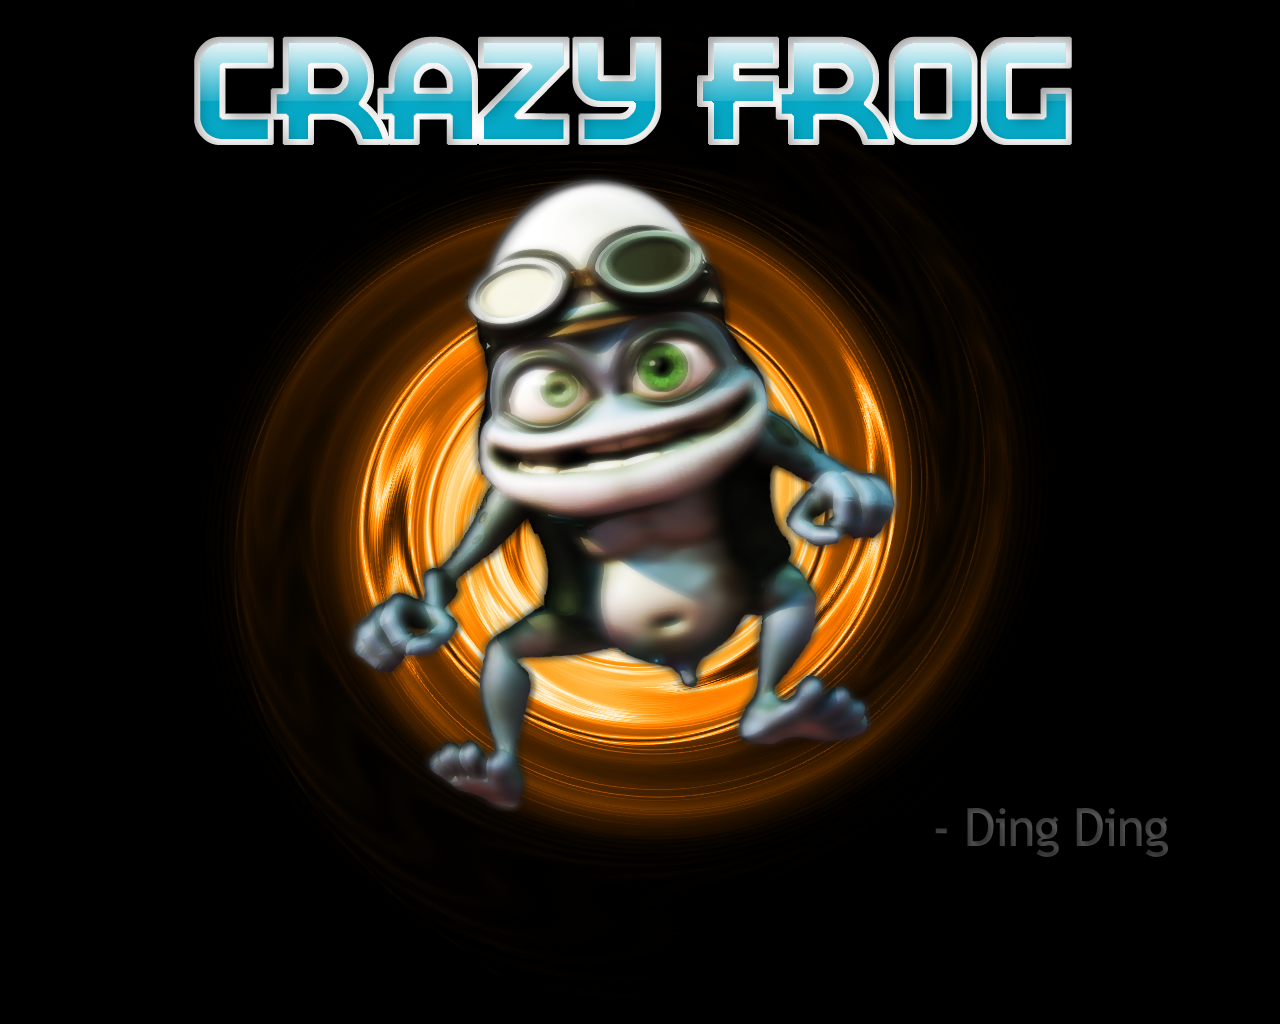 Crazy frog wallpaper